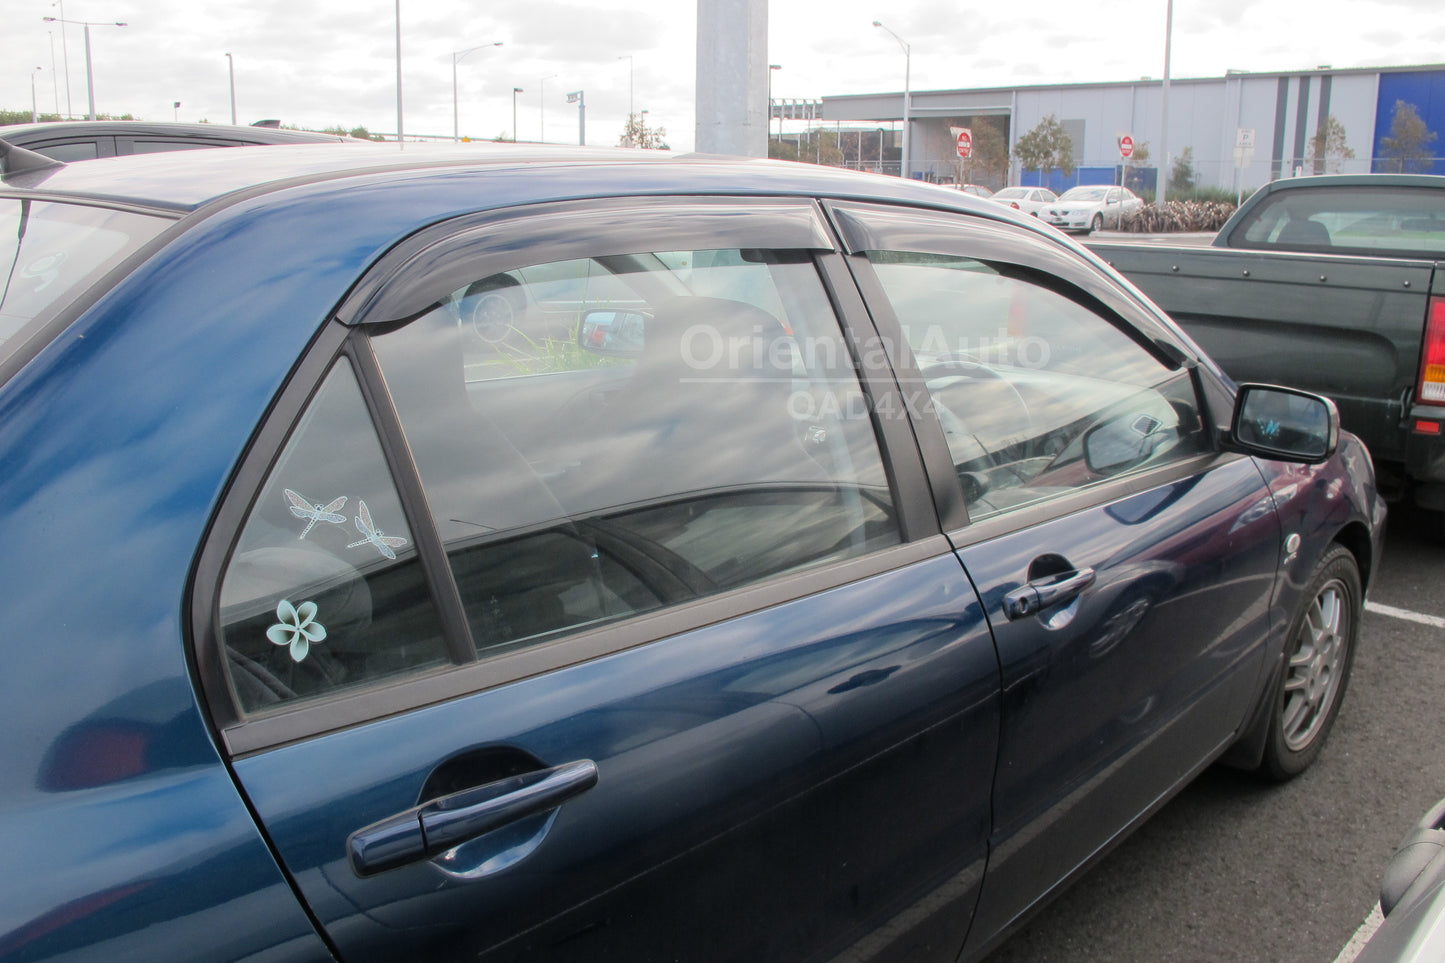 OAD Premium Weathershields Weather Shields Window Visor For Mitsubishi Lancer Sedan 2003-2007